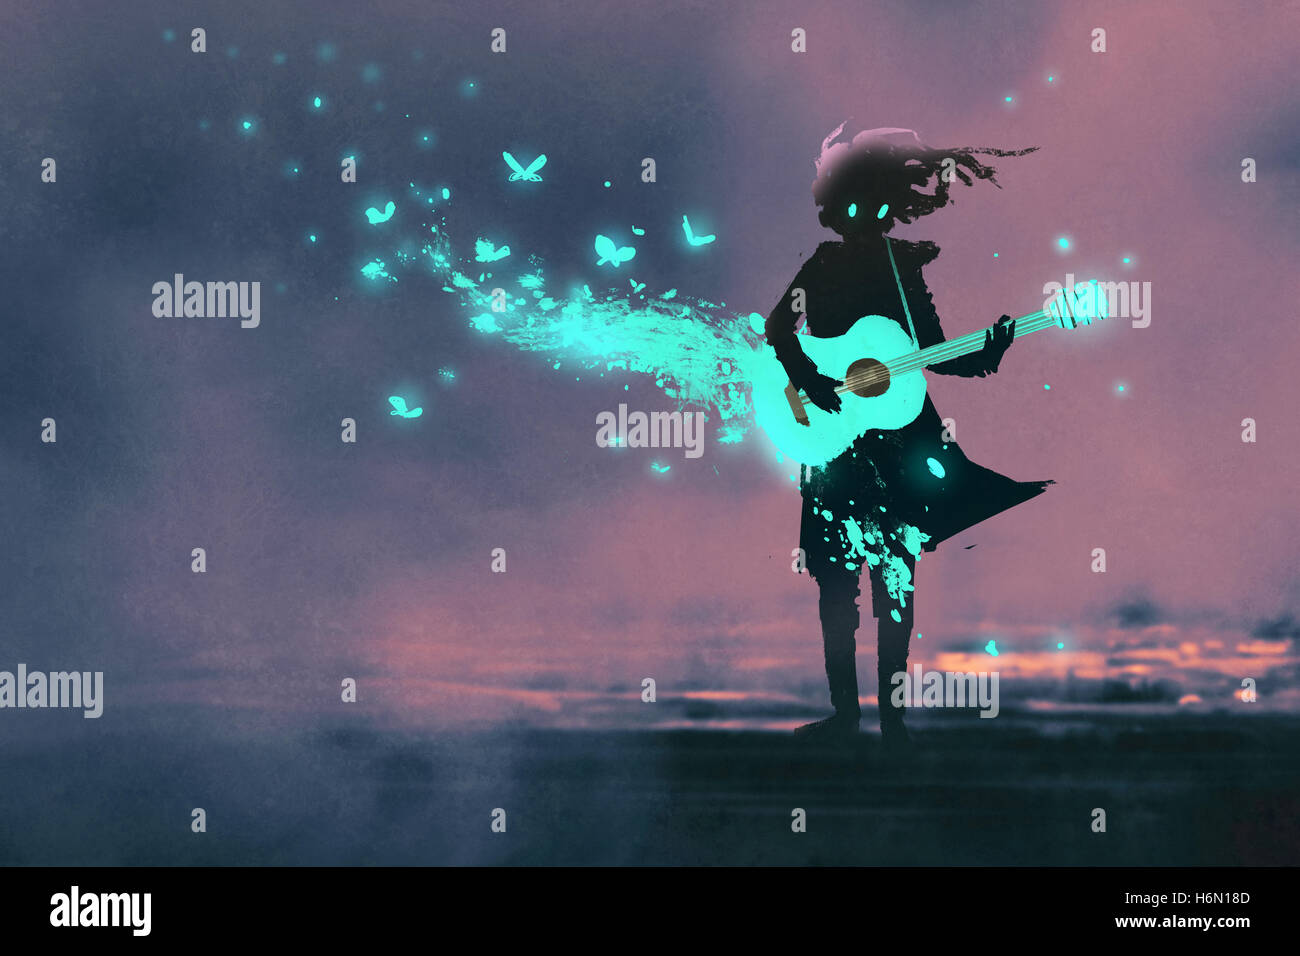 Fille jouant de la guitare avec une lumière bleue et glowing butterflies,illustration peinture Banque D'Images